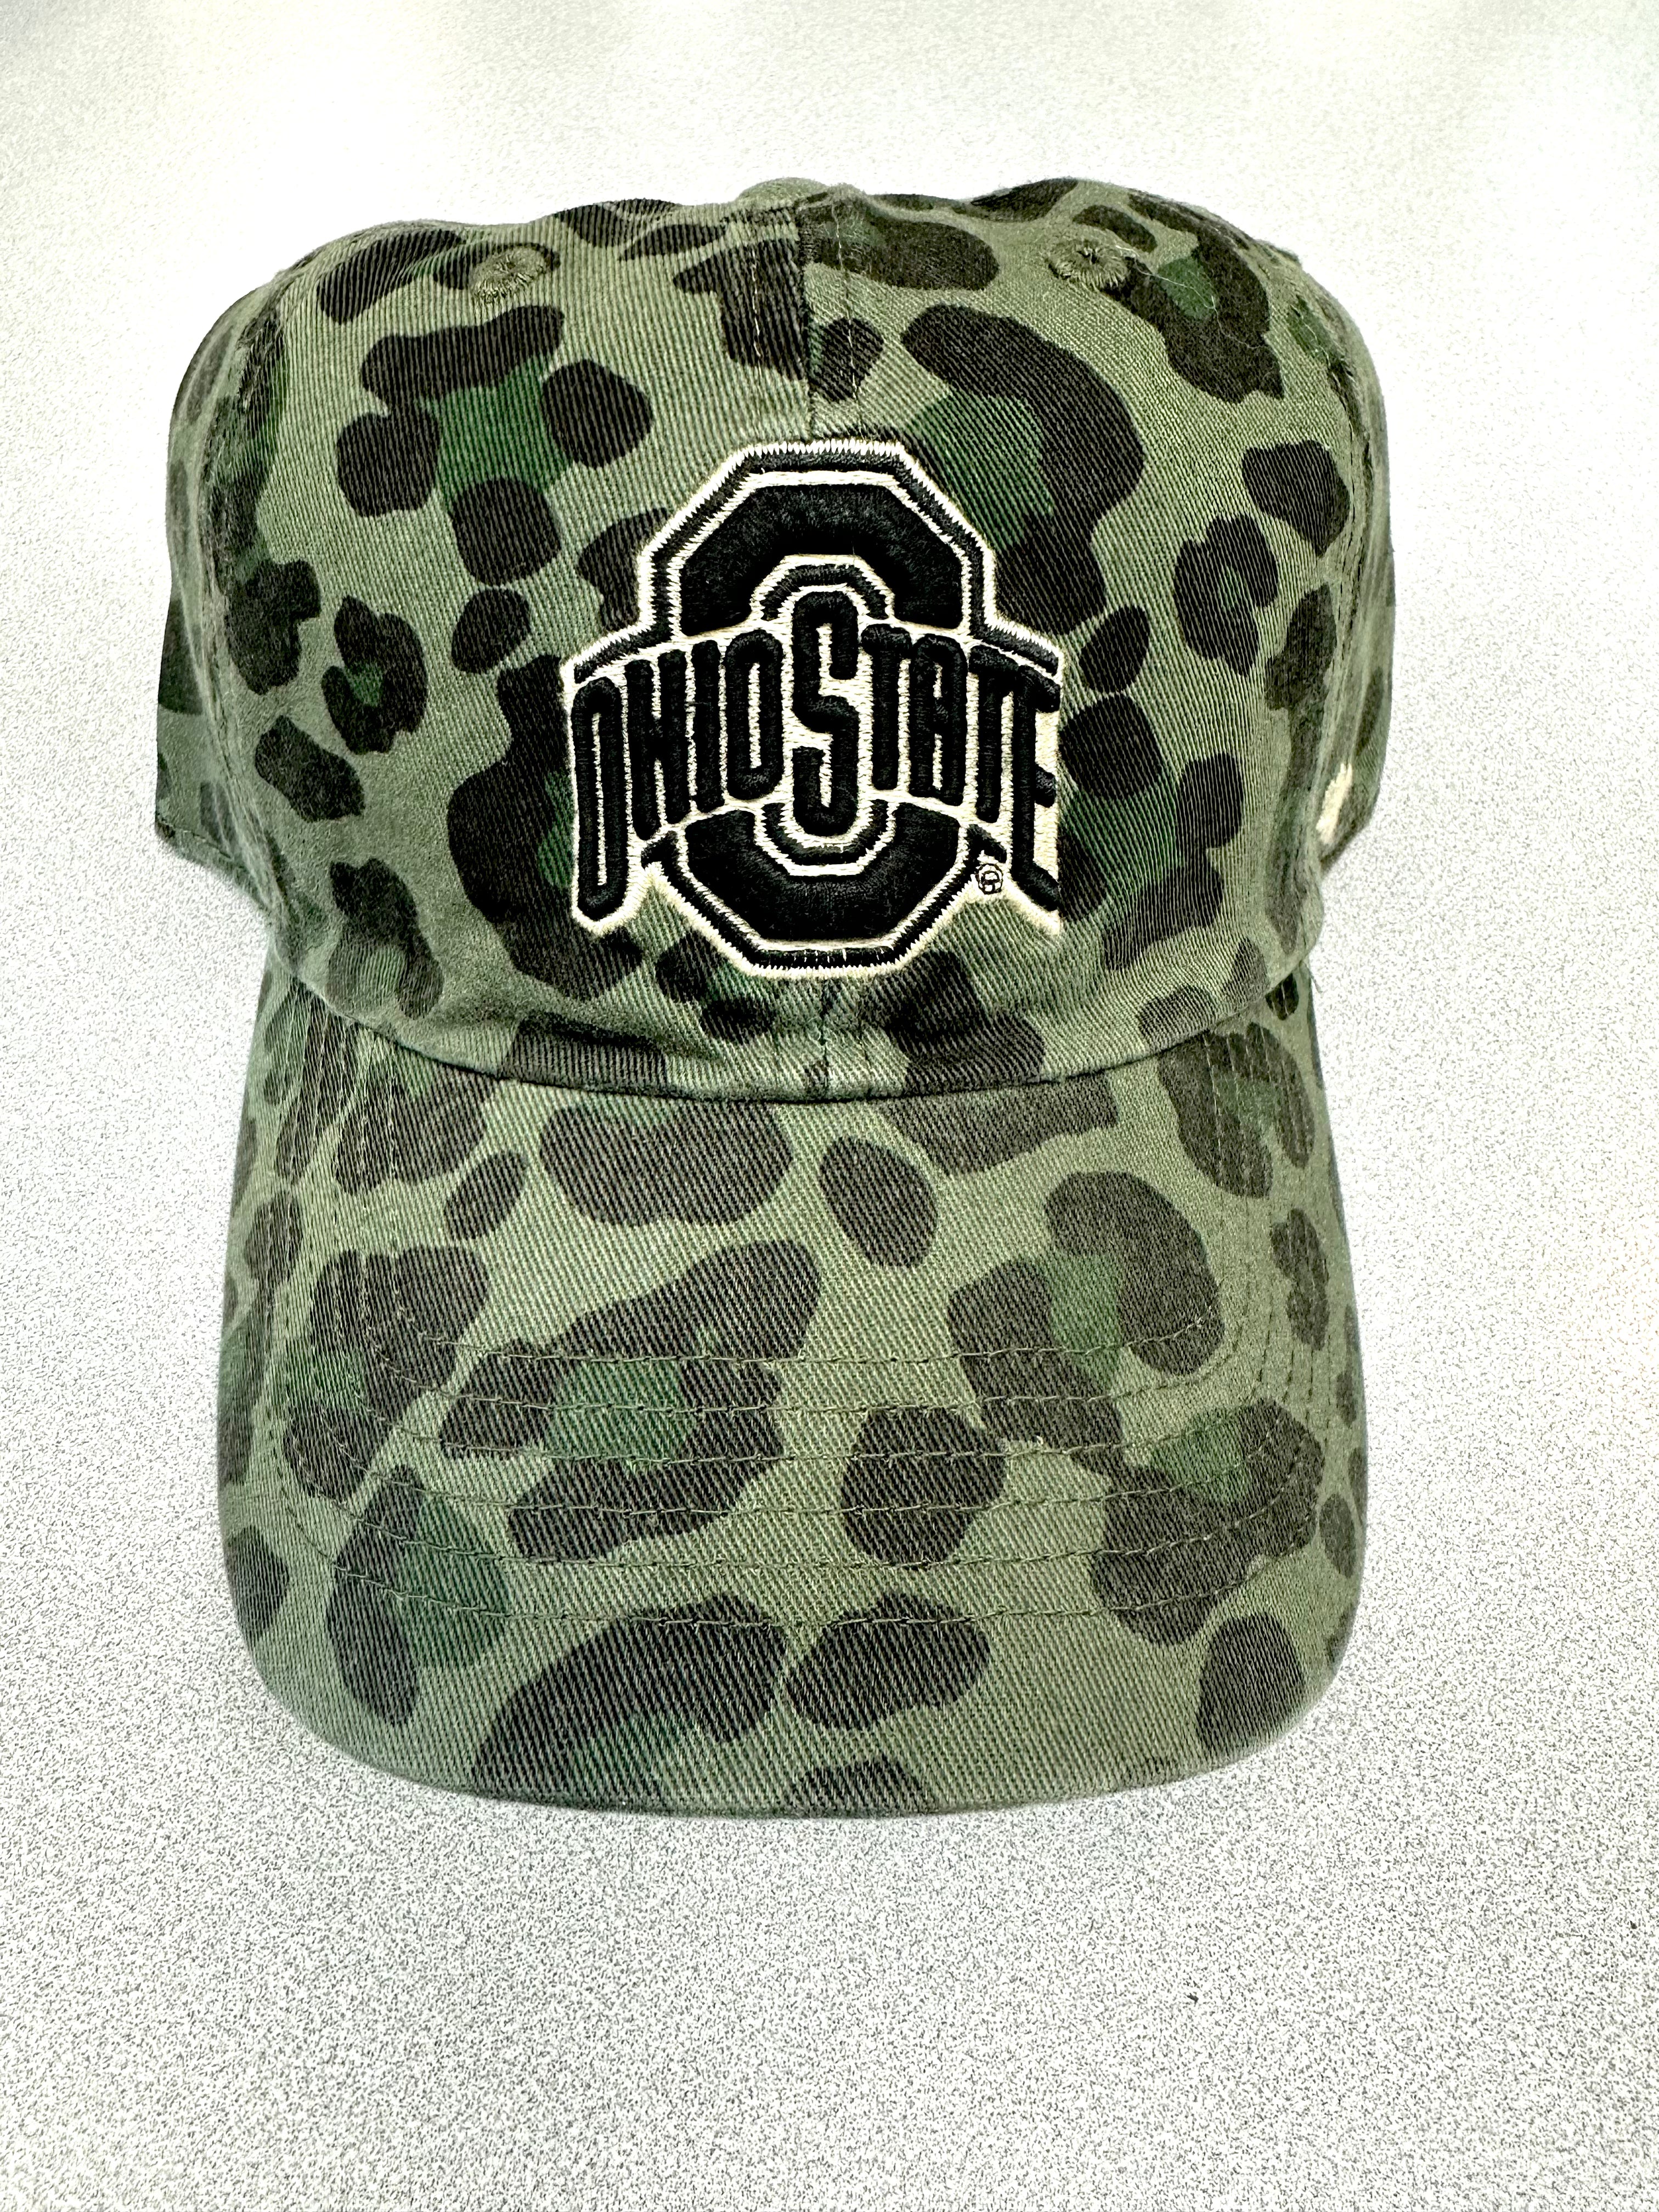 Ohio State Buckeyes Moss Bagheera hat